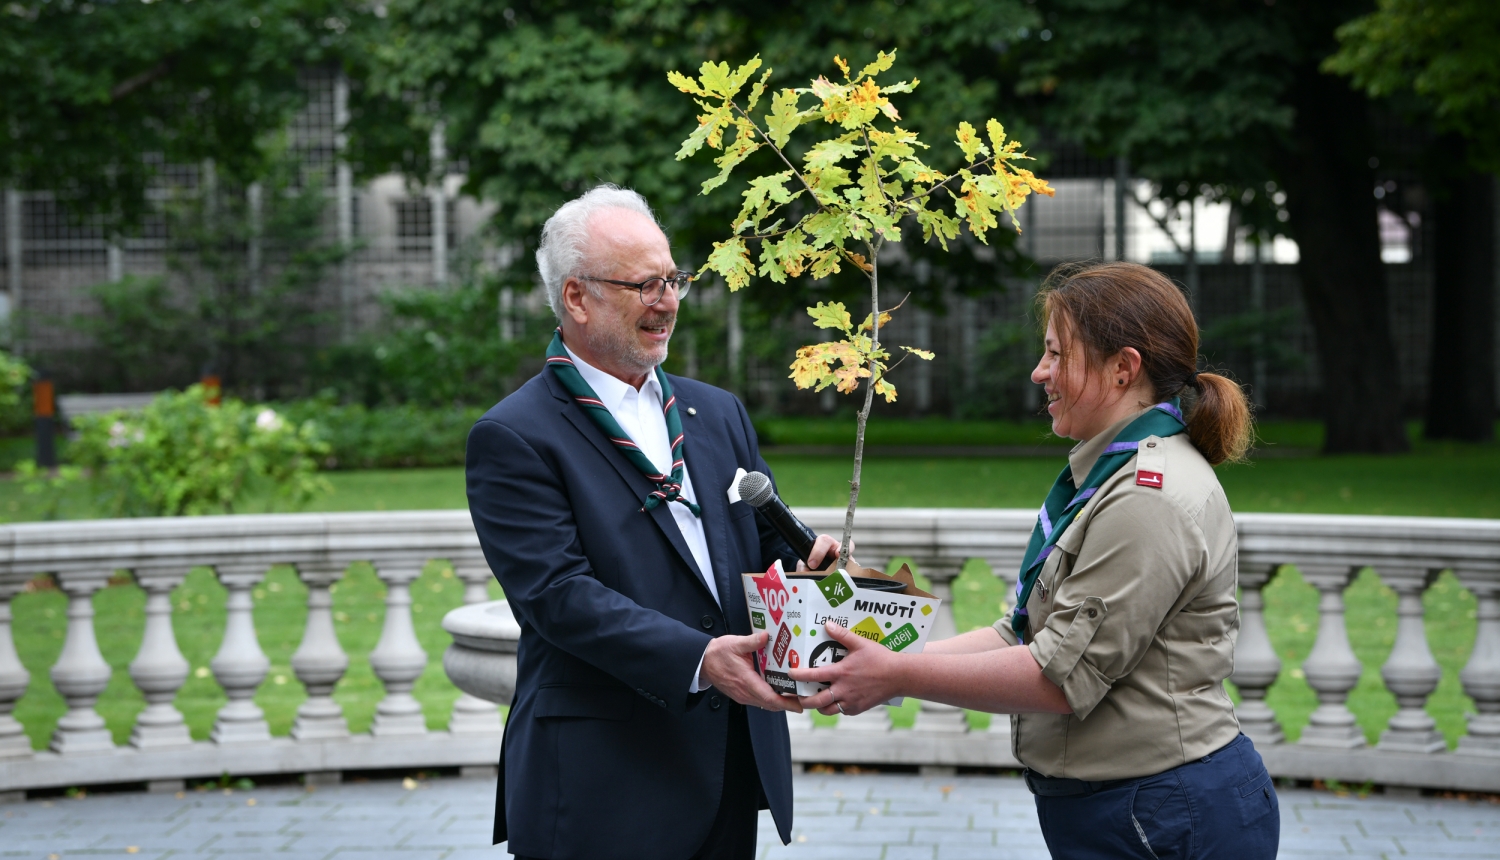 Valsts prezidents Egils Levits nodod Laimes koku Latvijas skautu un gaidu centrālās organizācijas vadītājai Agnijai Jansonei